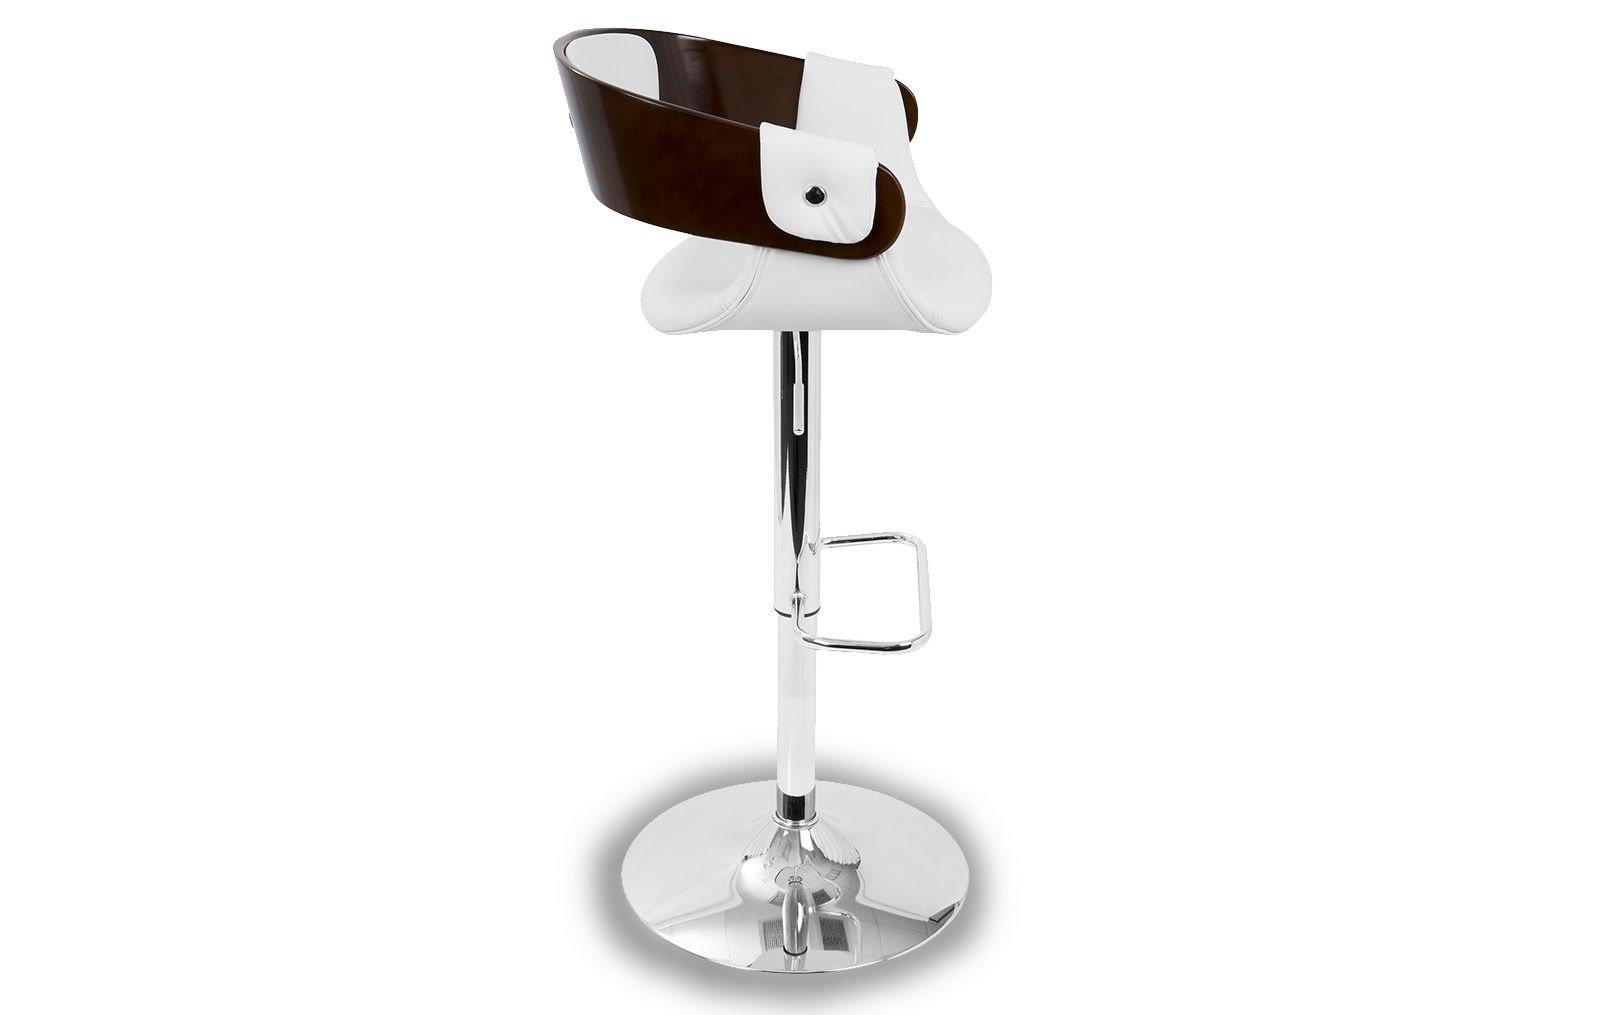 Барный стул -  белая экокожа/шпона вишни, ножка из хромированного металла